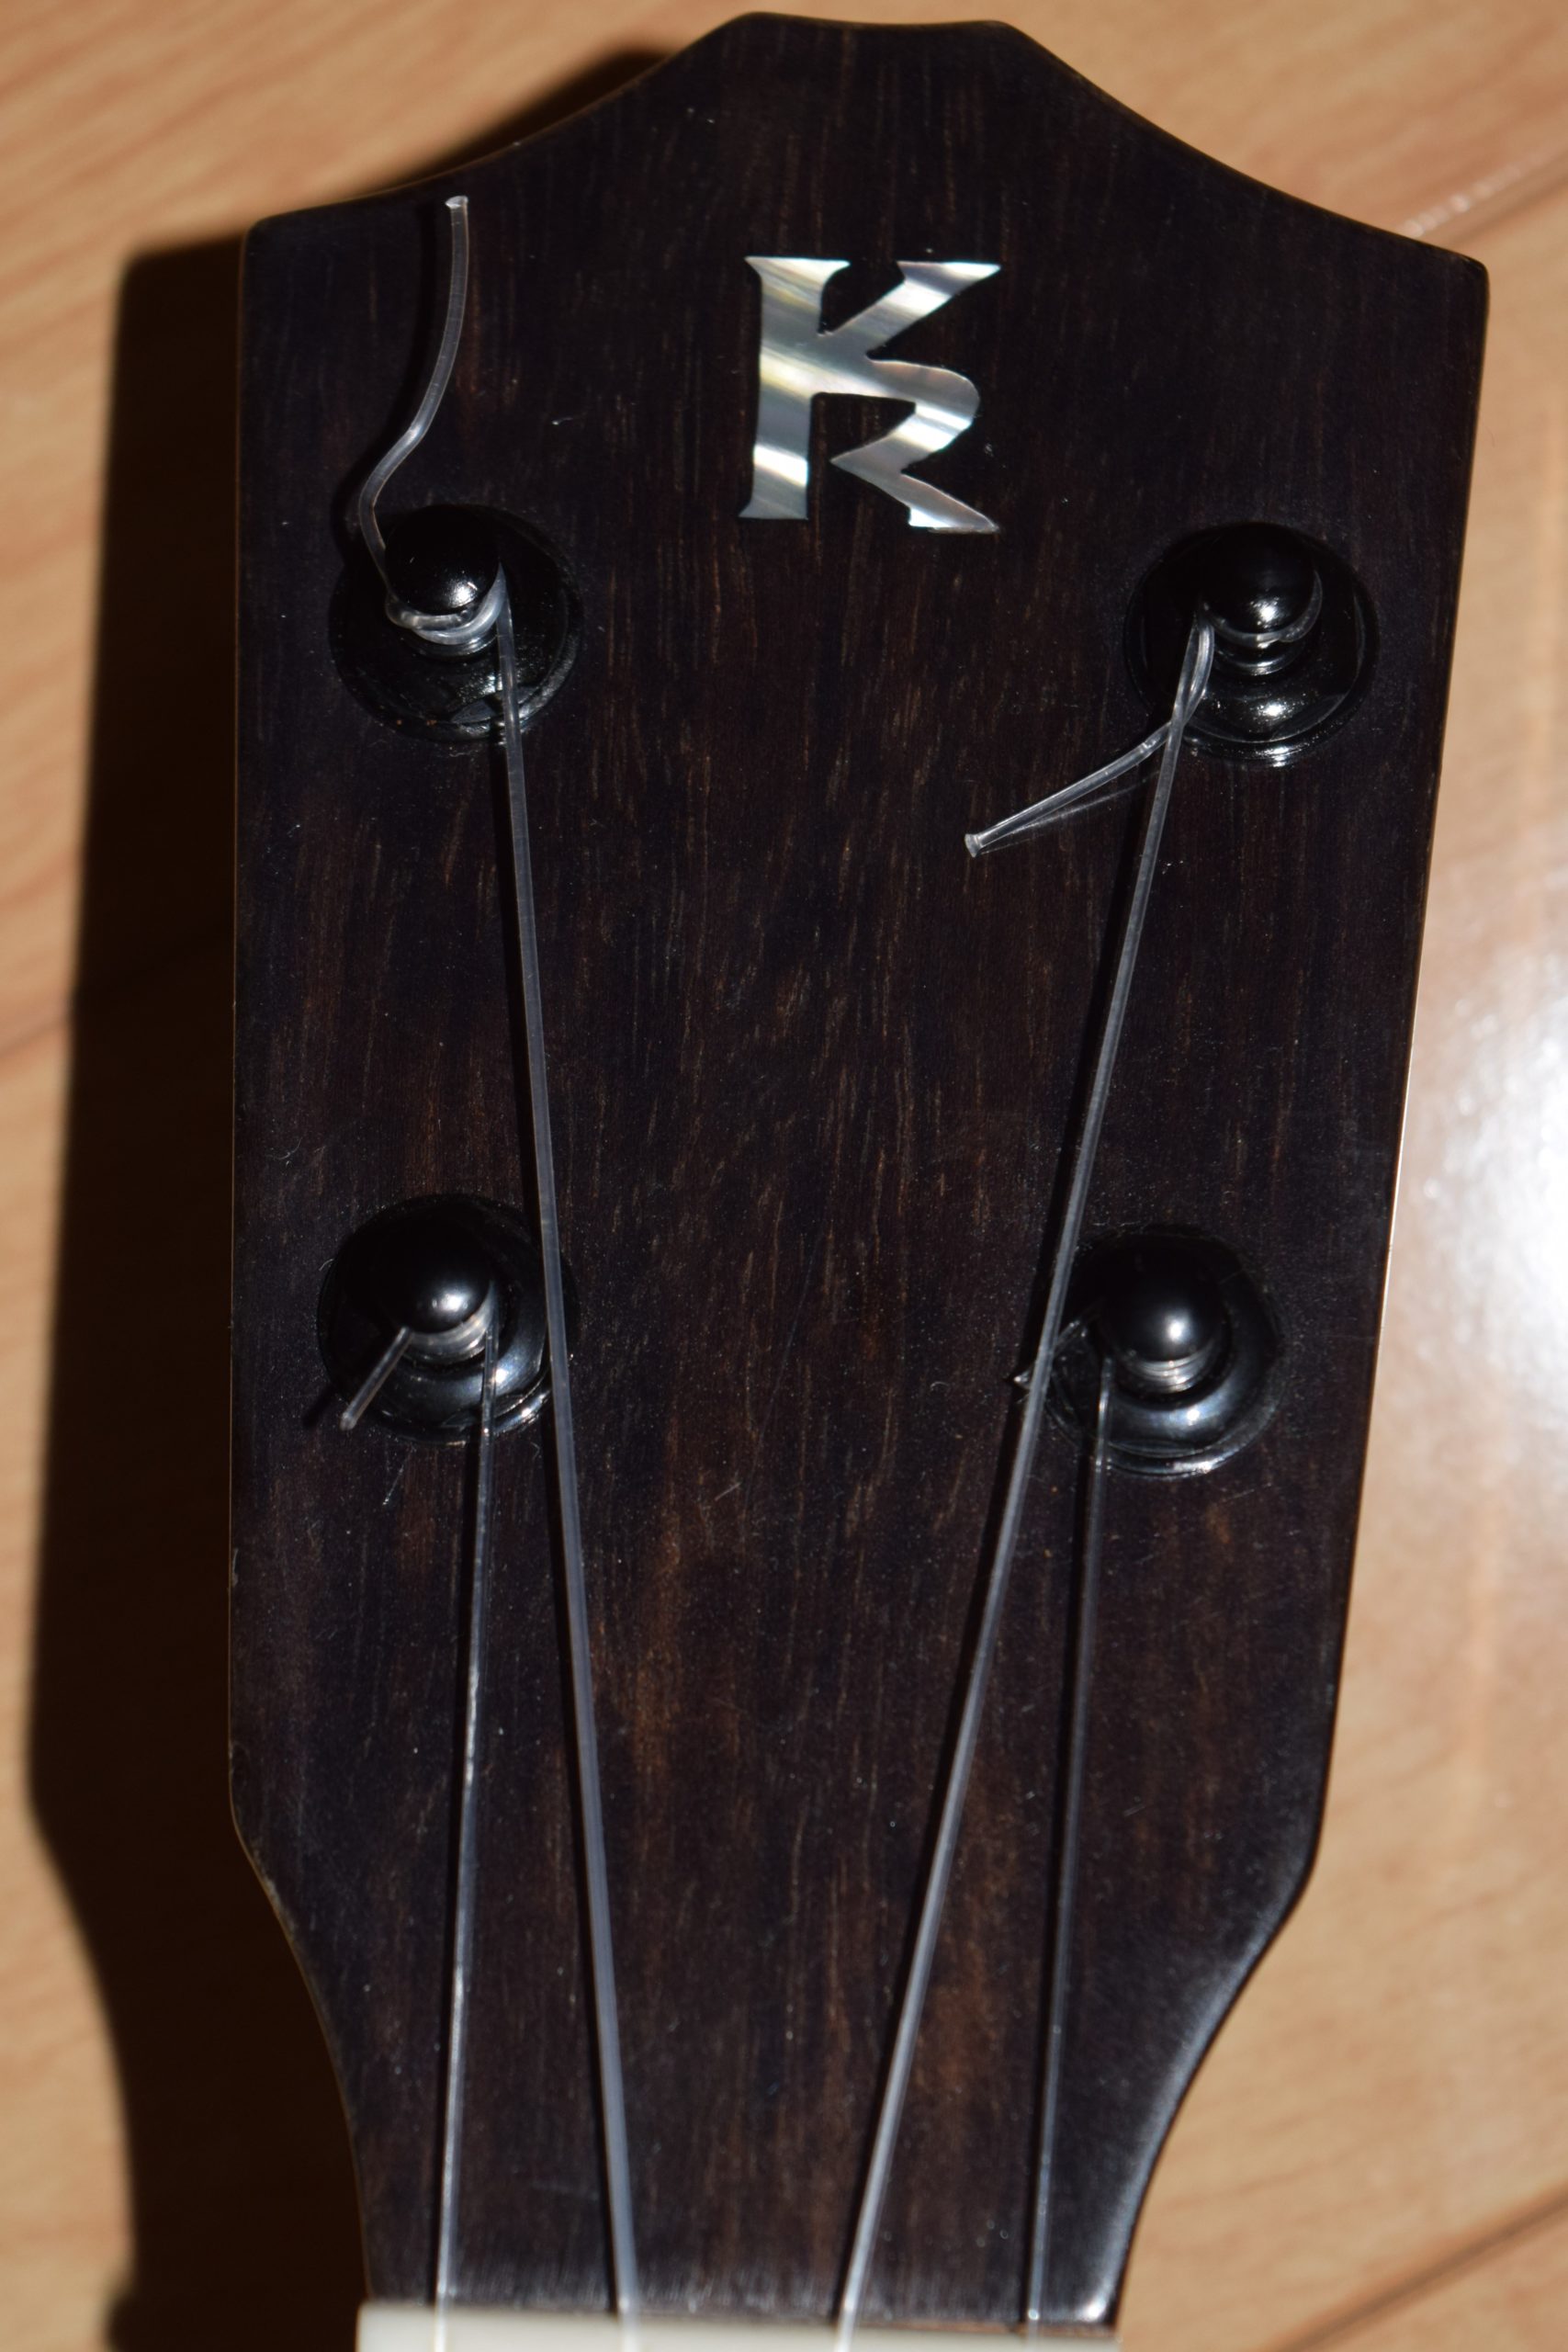 ukulele3